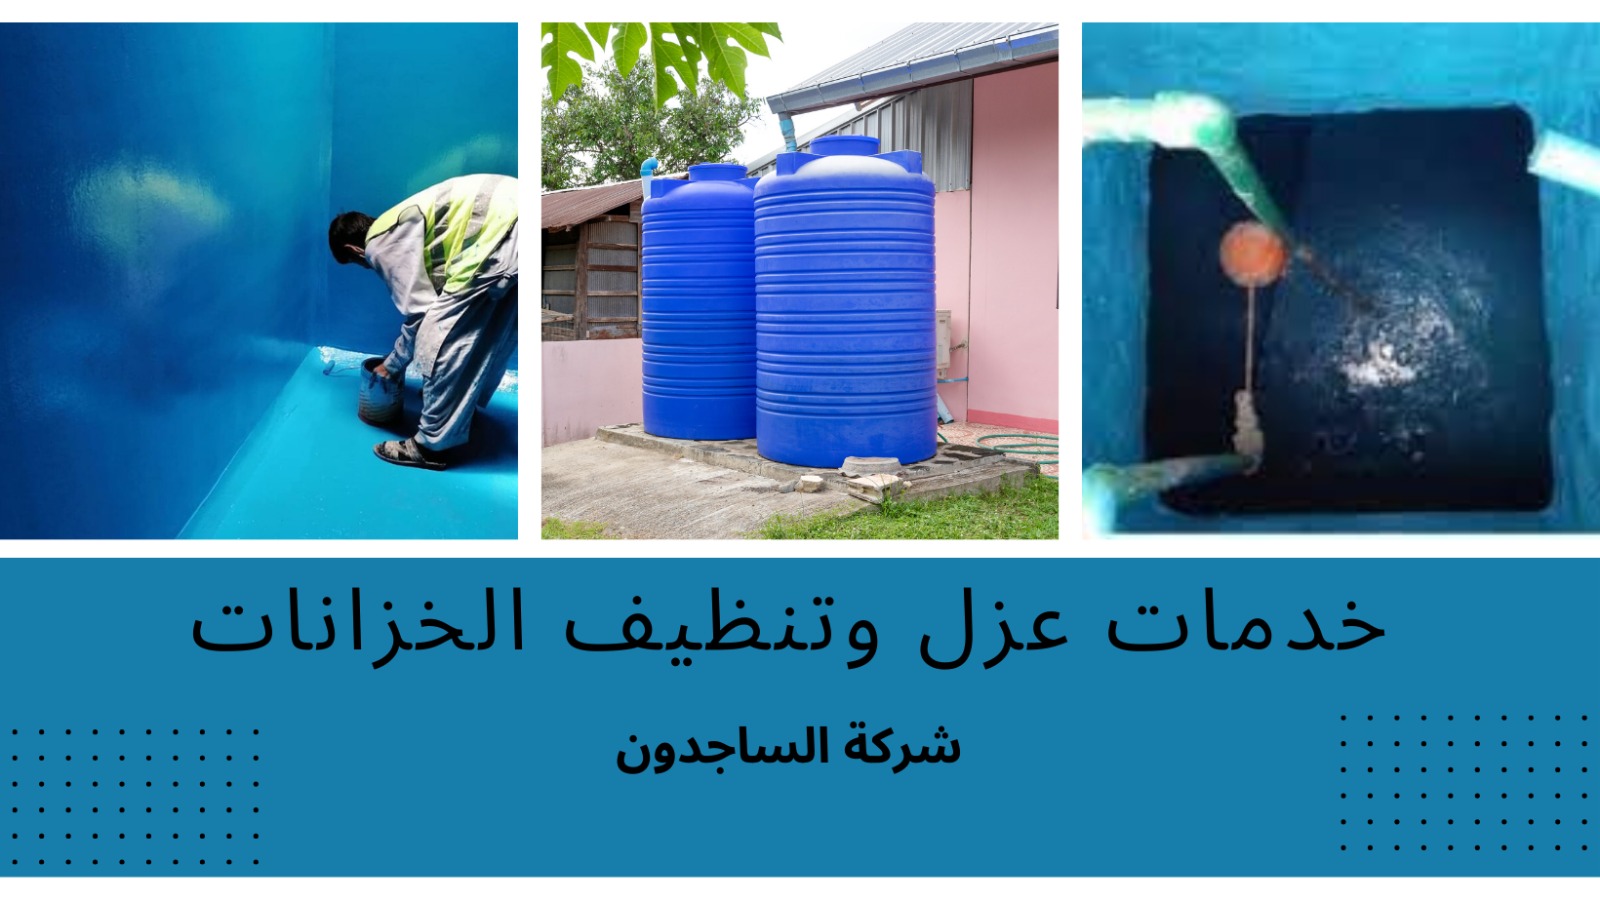 عزل وتنظيف خزانات بالقويعية شركة الساجدون لعزل وتنظيف الخزانات وكشف التسربات وعلاجها